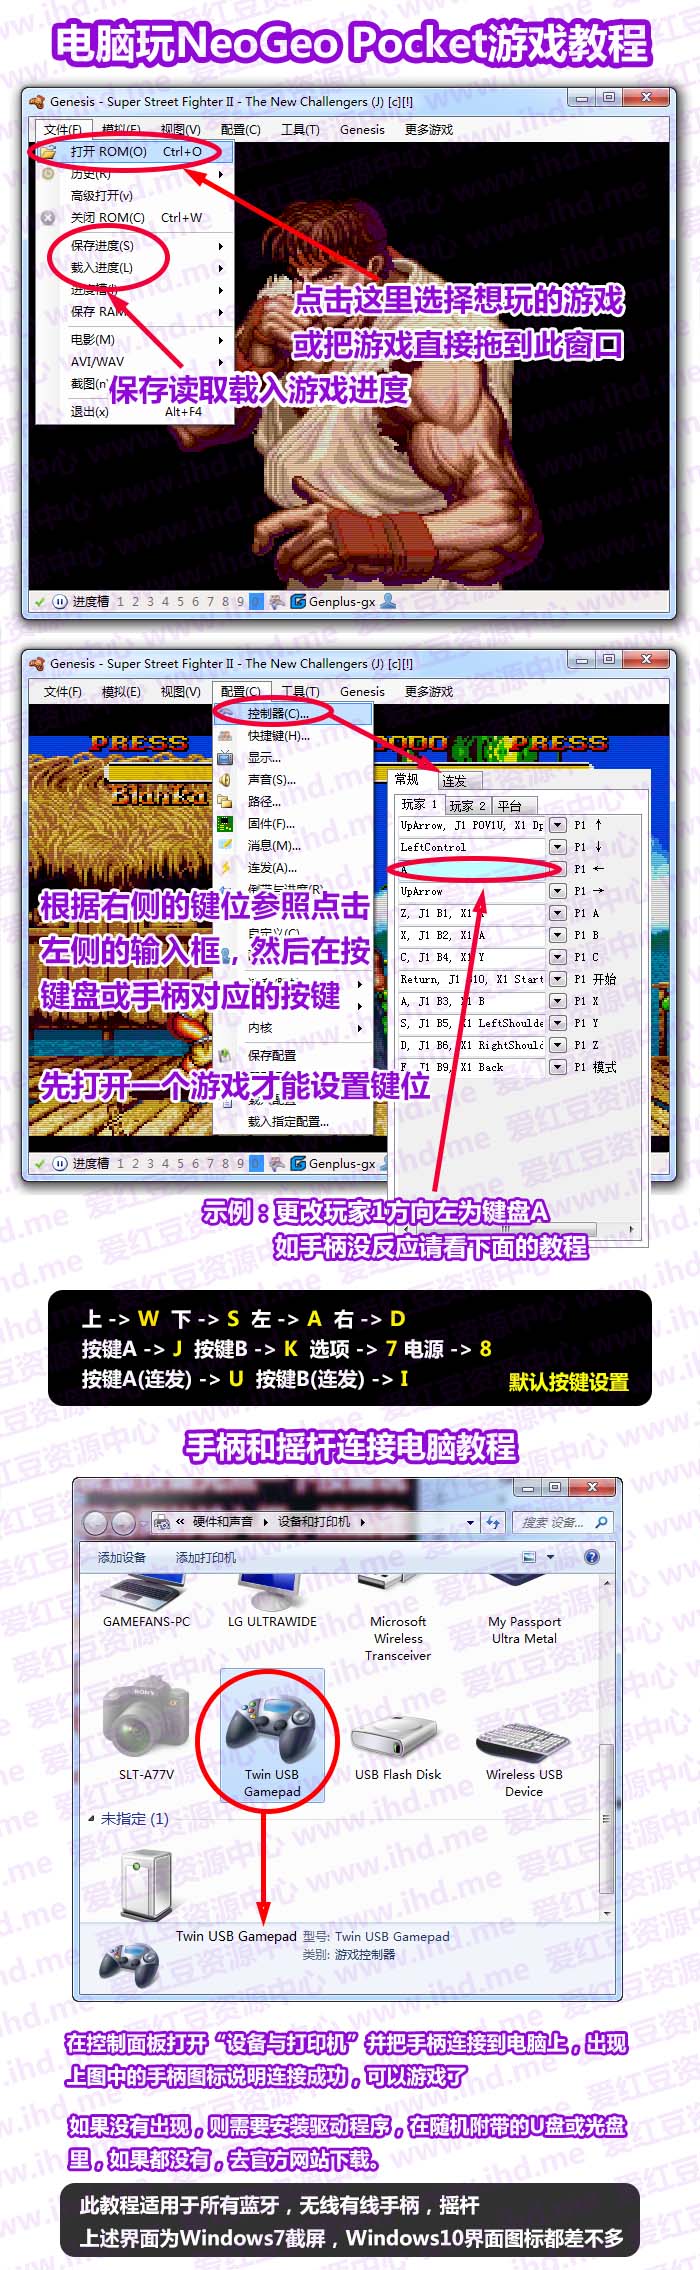 SNK NeoGeo Pocket游戏全集下载内含手柄设置教程截图对照 介绍图片